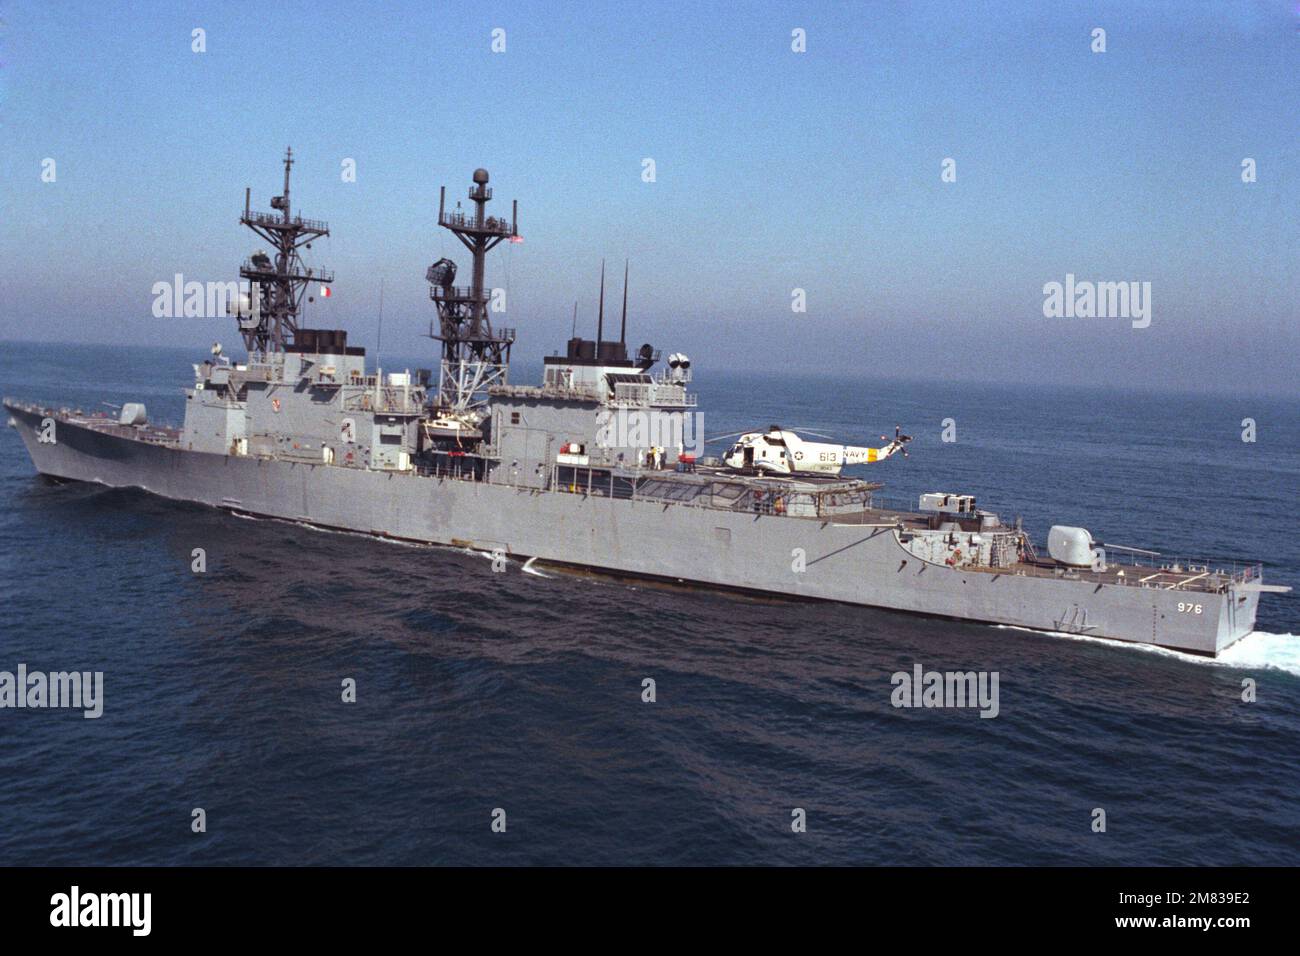 Une vue aérienne du quartier portuaire du destroyer USS MERRILL (DD 976) de la classe Spruance est en cours. Un hélicoptère Sea King de l'escadron anti-sous-marin 6 (HS-6) SH-3 est stationné sur le pont. Pays : inconnu Banque D'Images